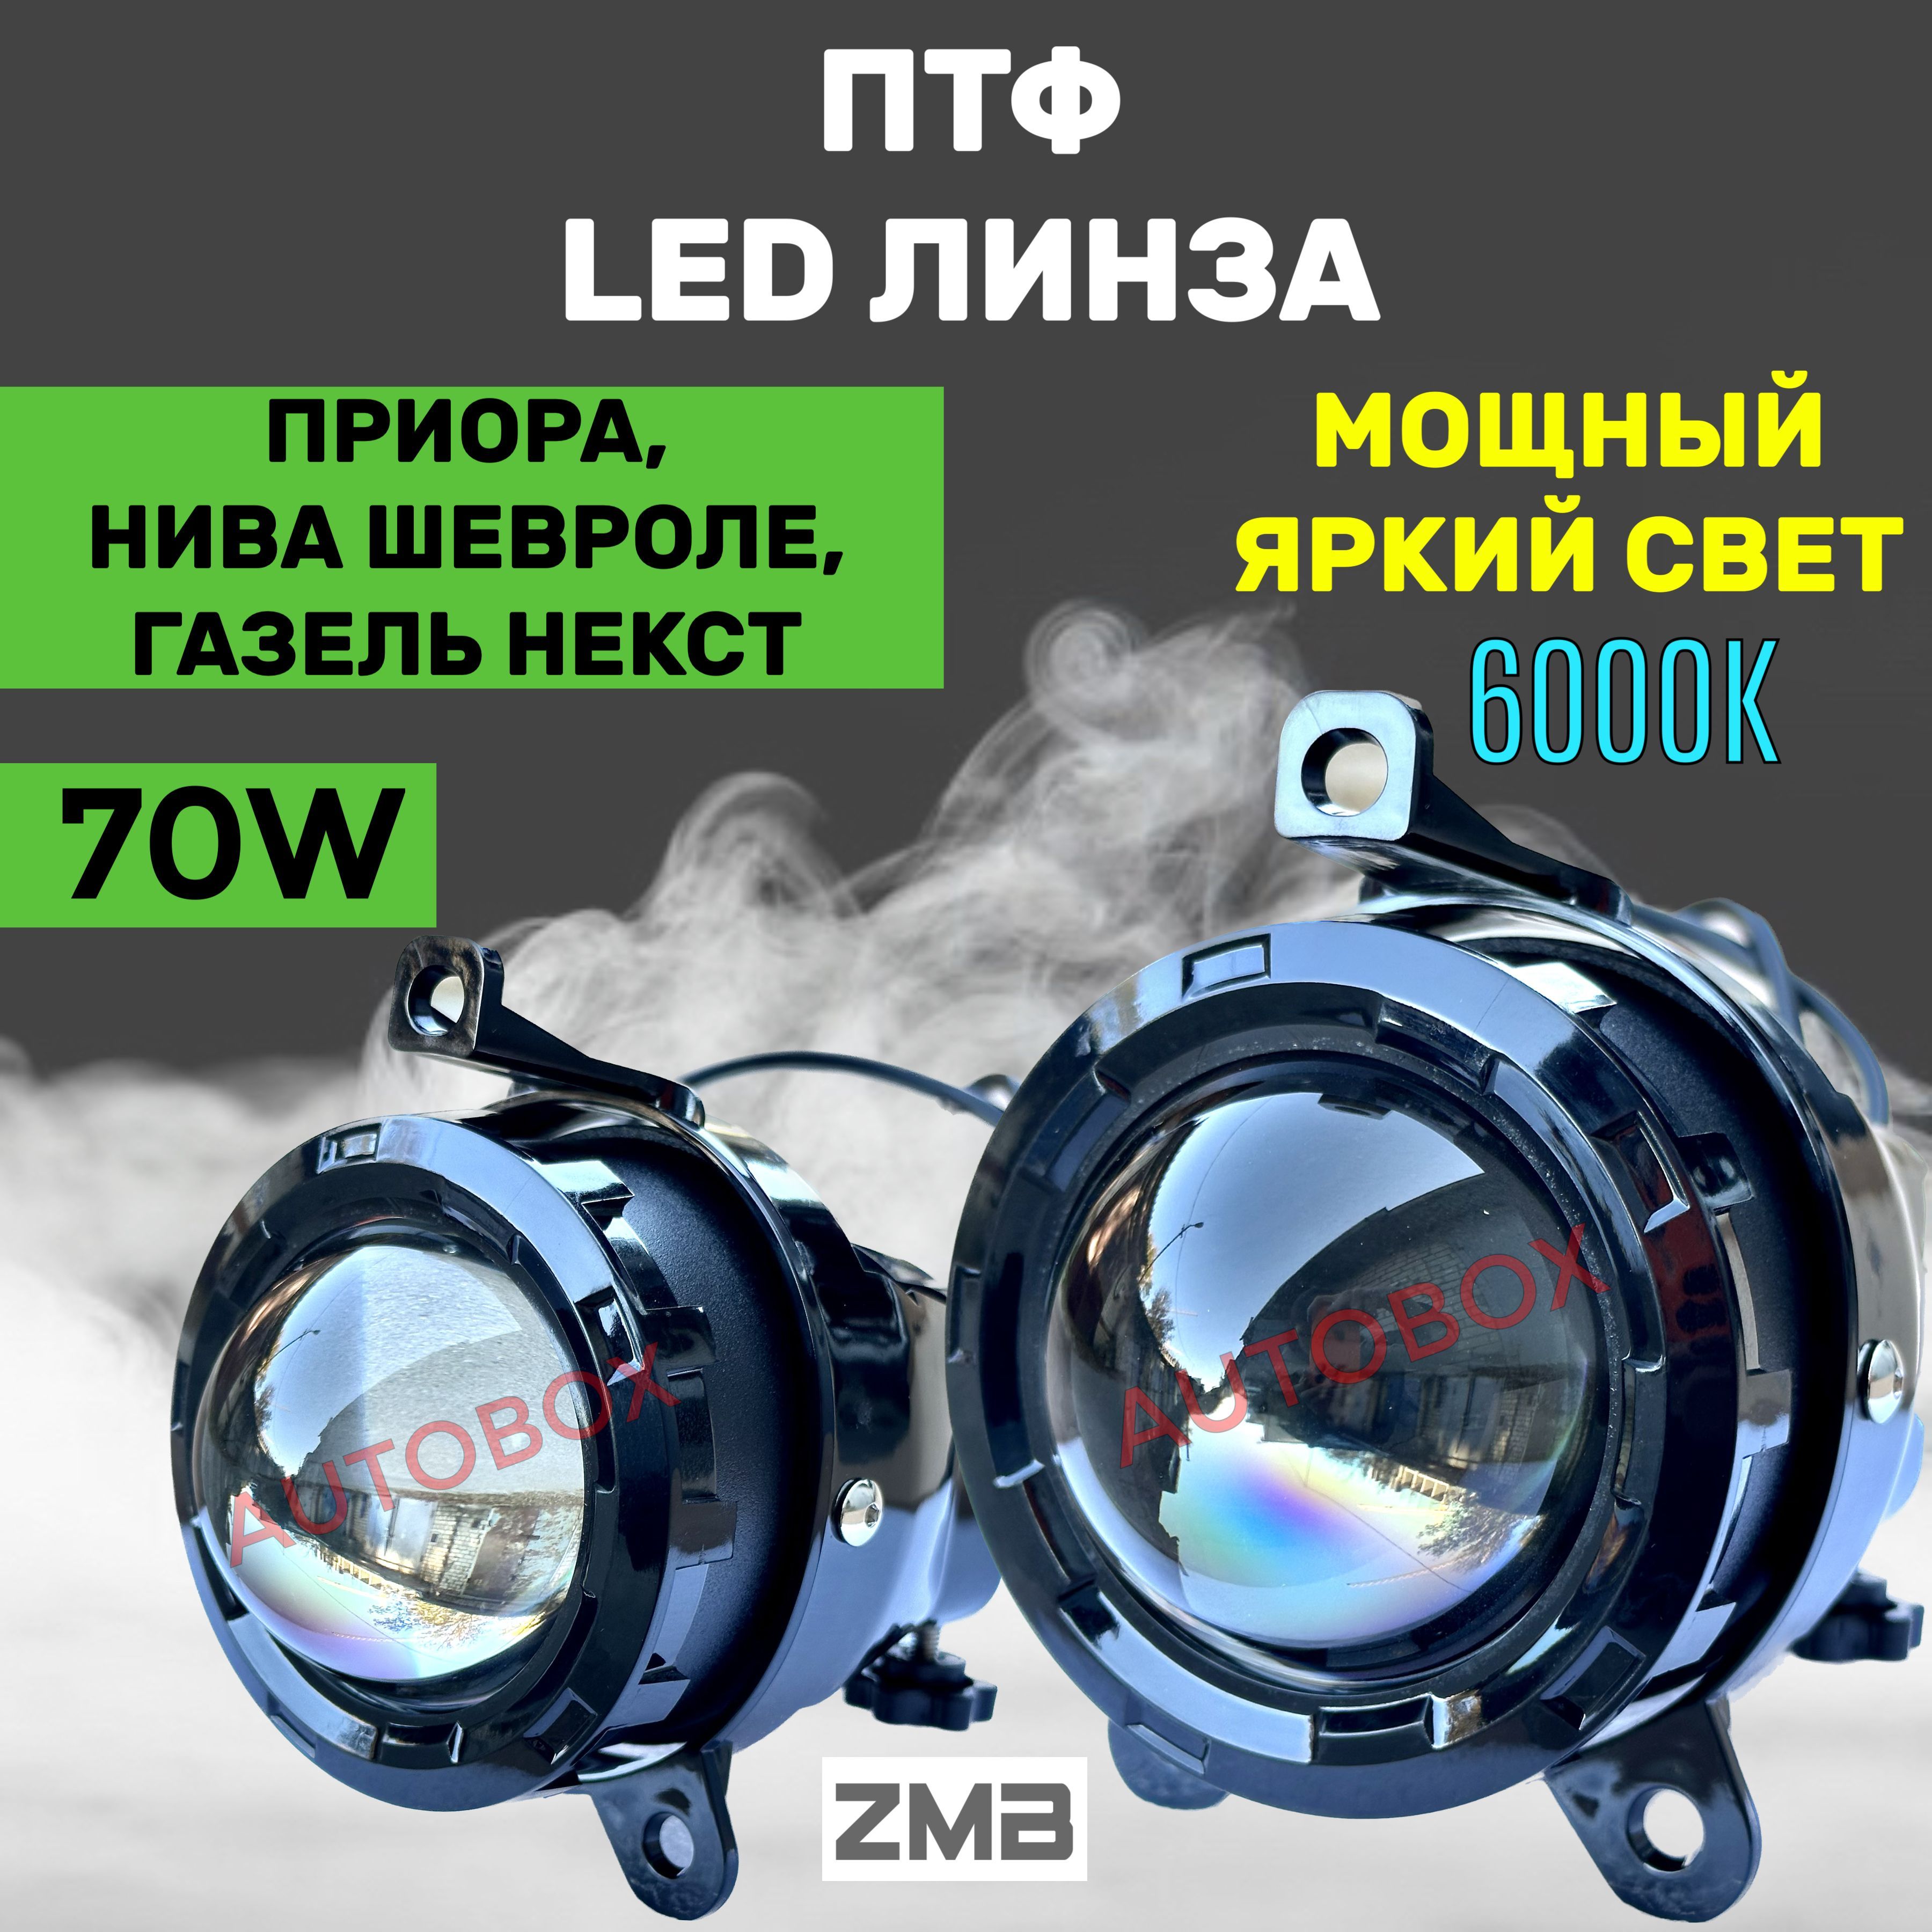 BI-LED линзы ПТФ 24V ближний/дальний универсальные - купить в Самаре, цена, фото, описание